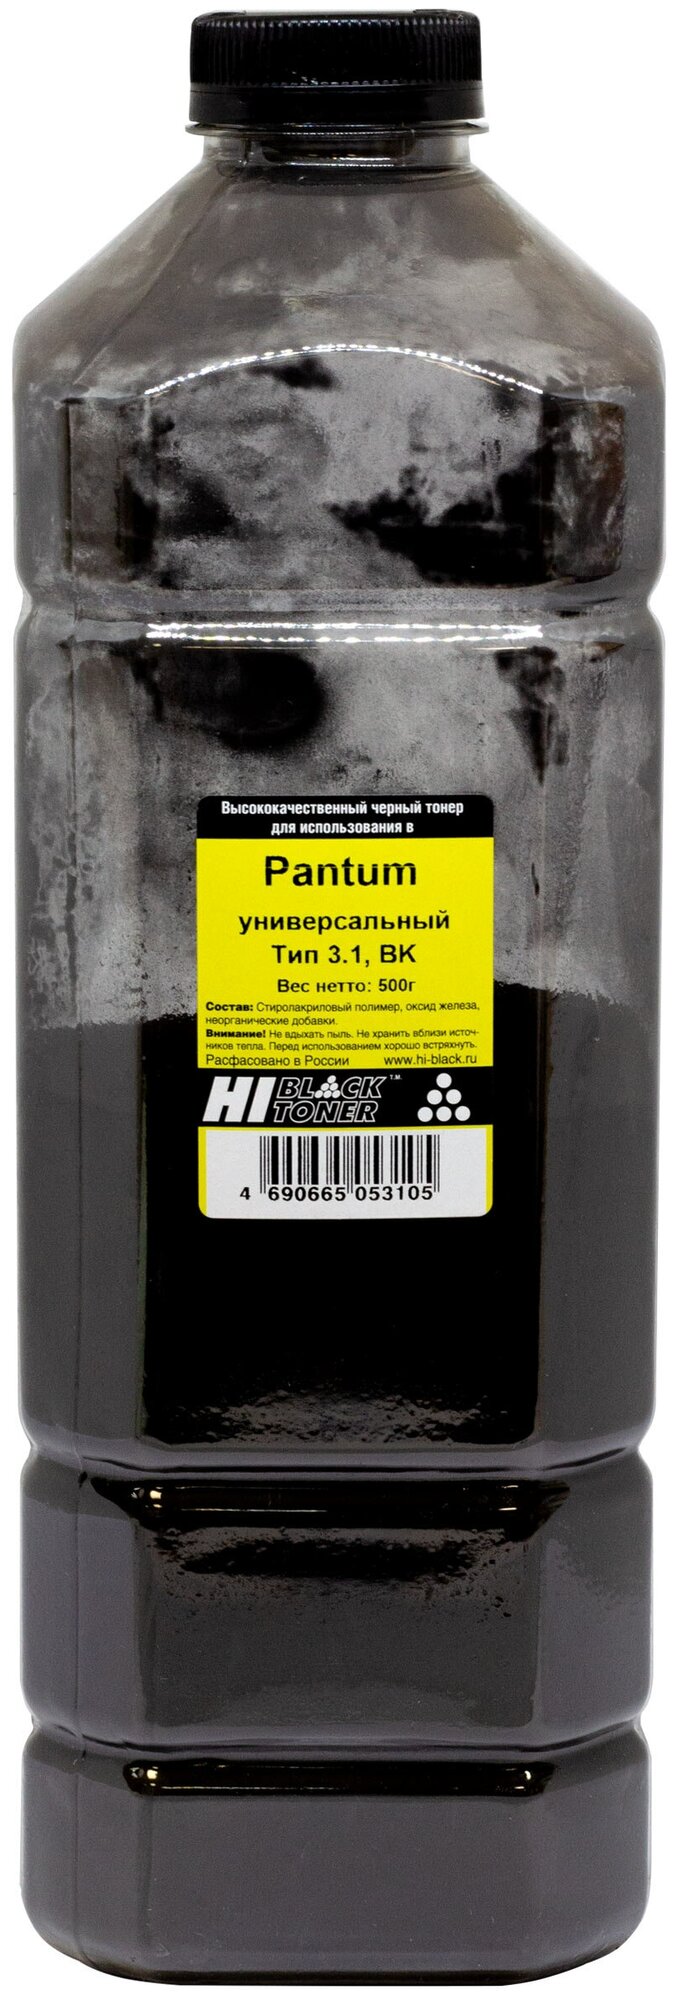 Тонер Hi-Black для Pantum Универсальный Bk Тип 3.1 500г канистра